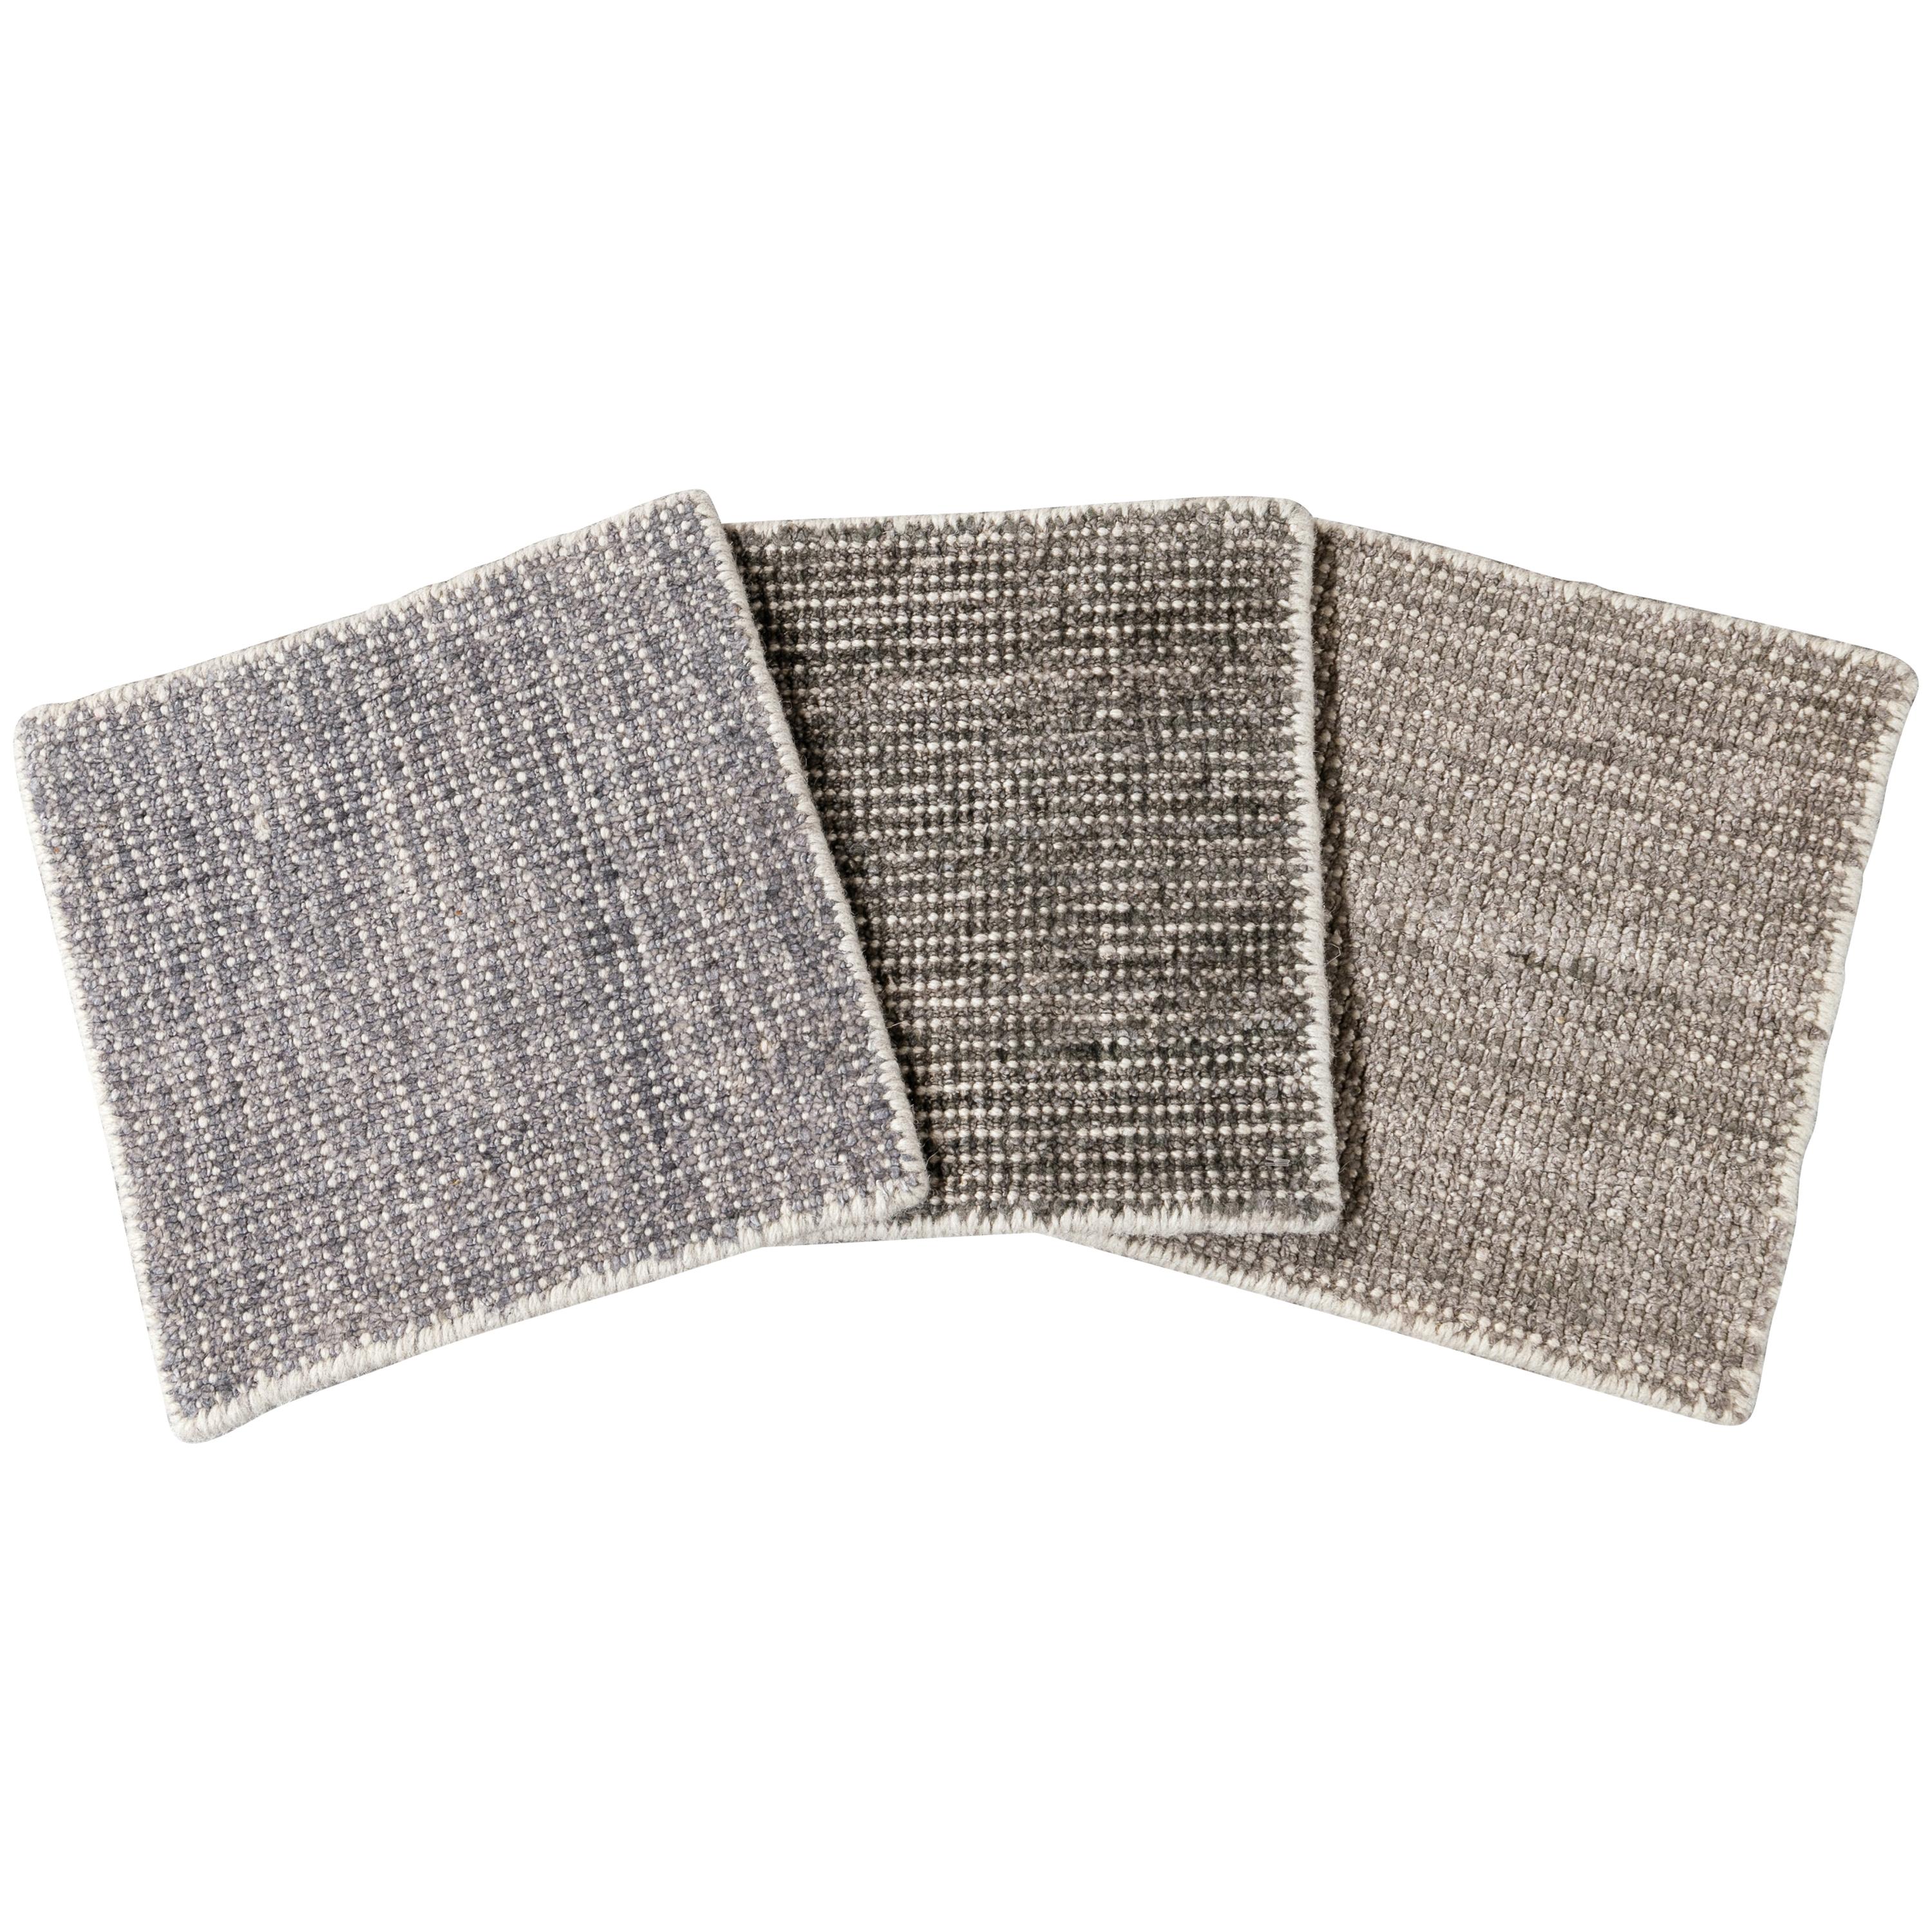 Wool and Silk Boho Custom Rug